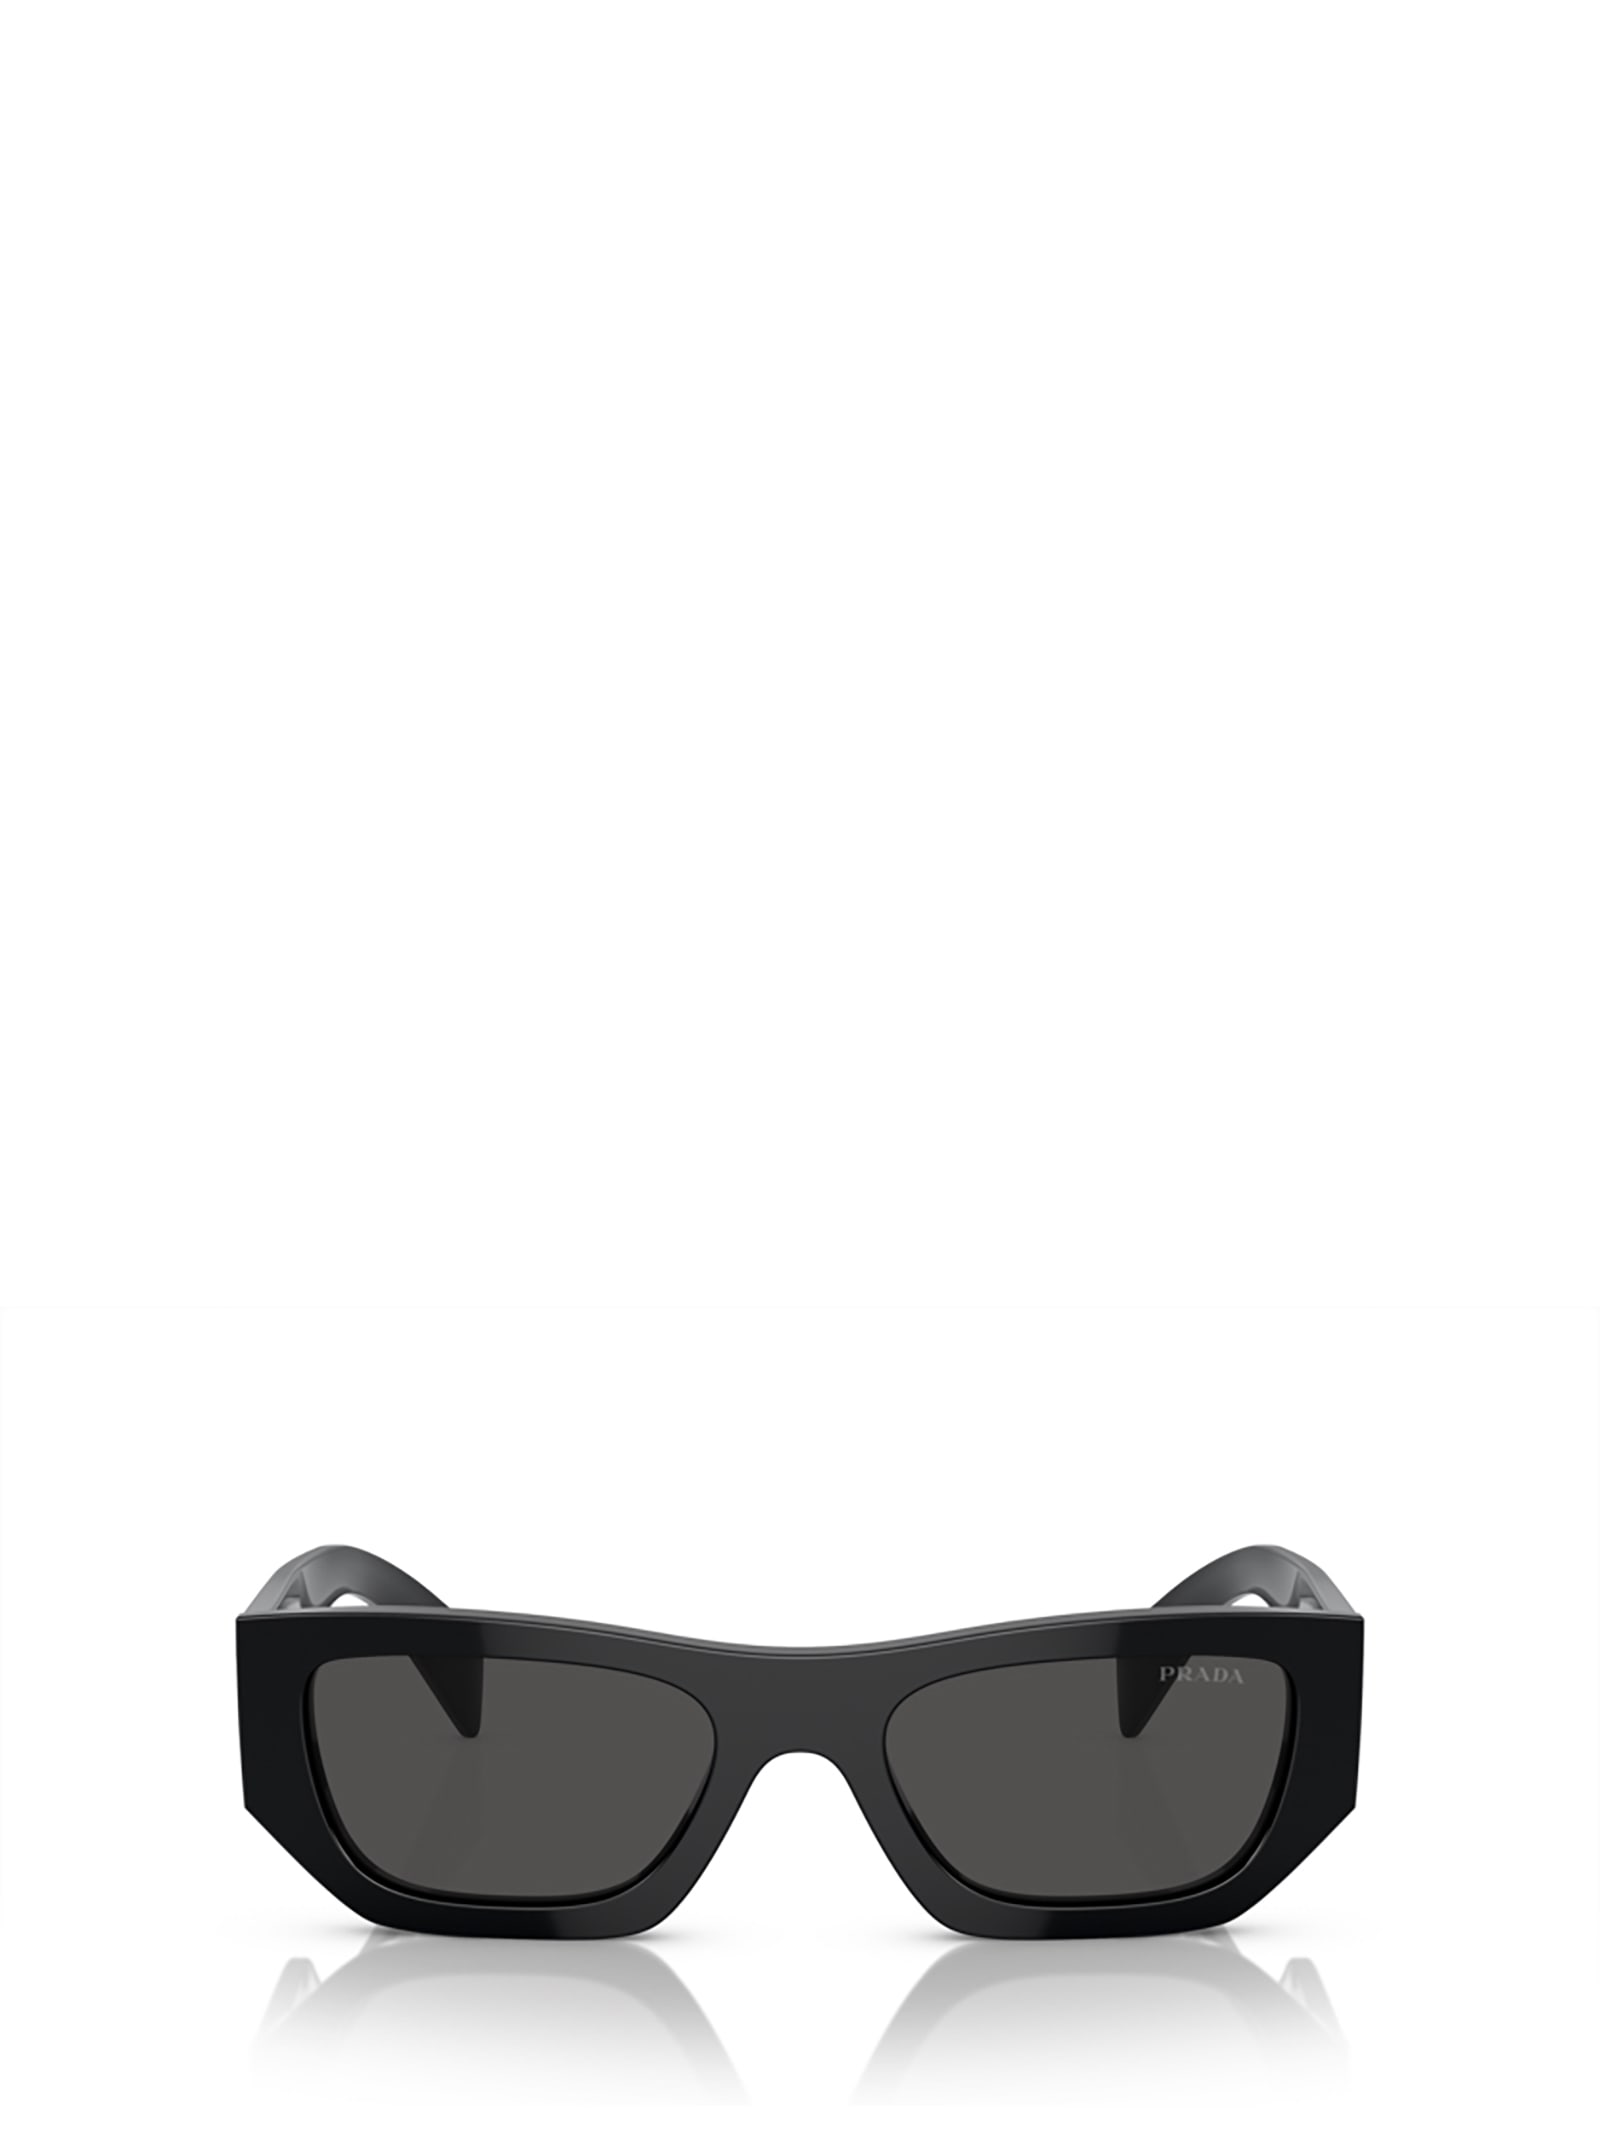 Prada Pr A01s Black Sunglasses